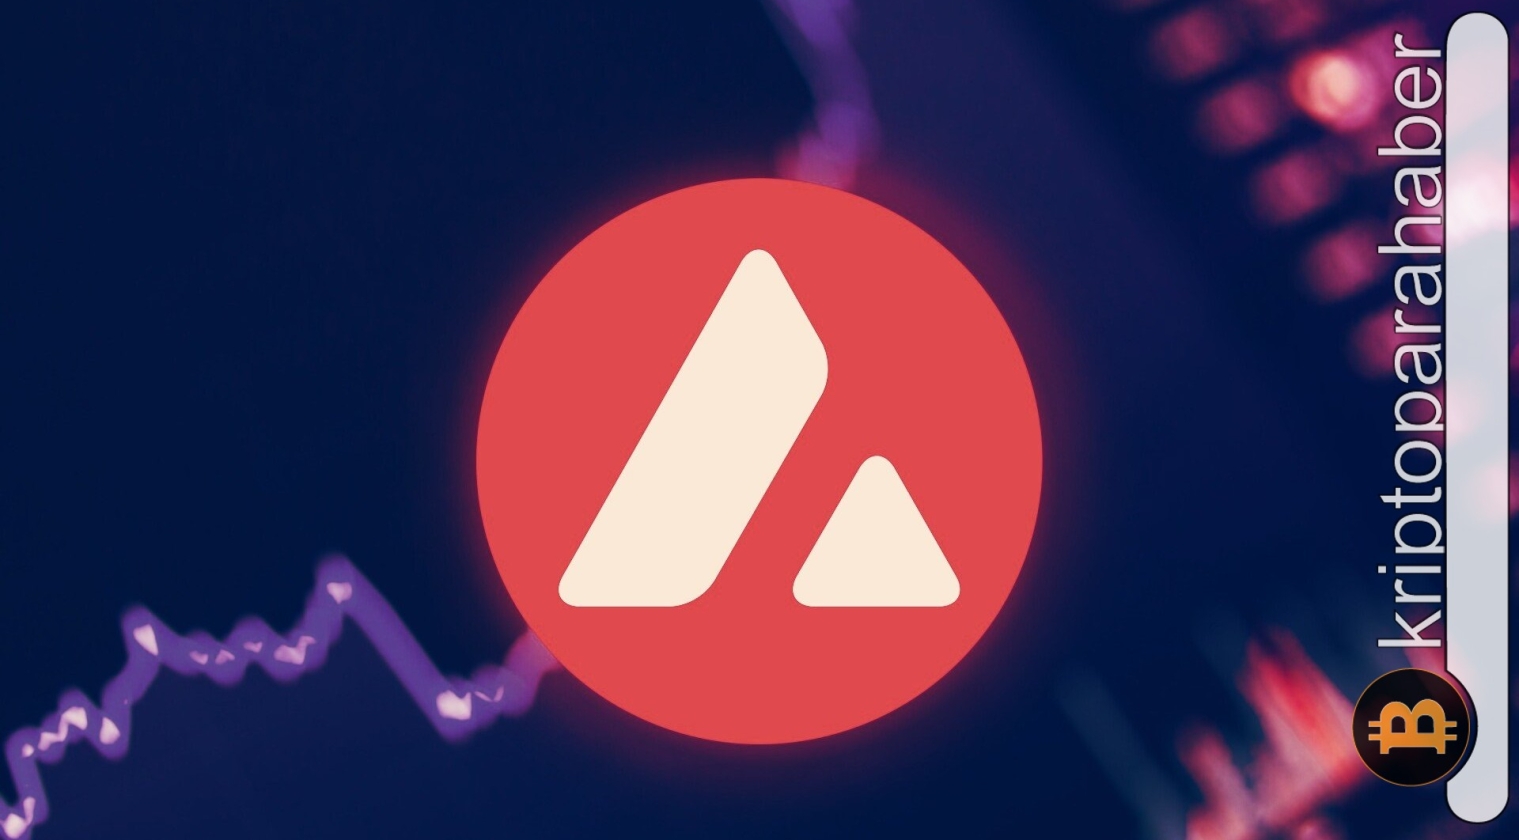 Avalanche fiyat tahmini: AVAX yükseliş momentumunu sürdürebilecek mi?